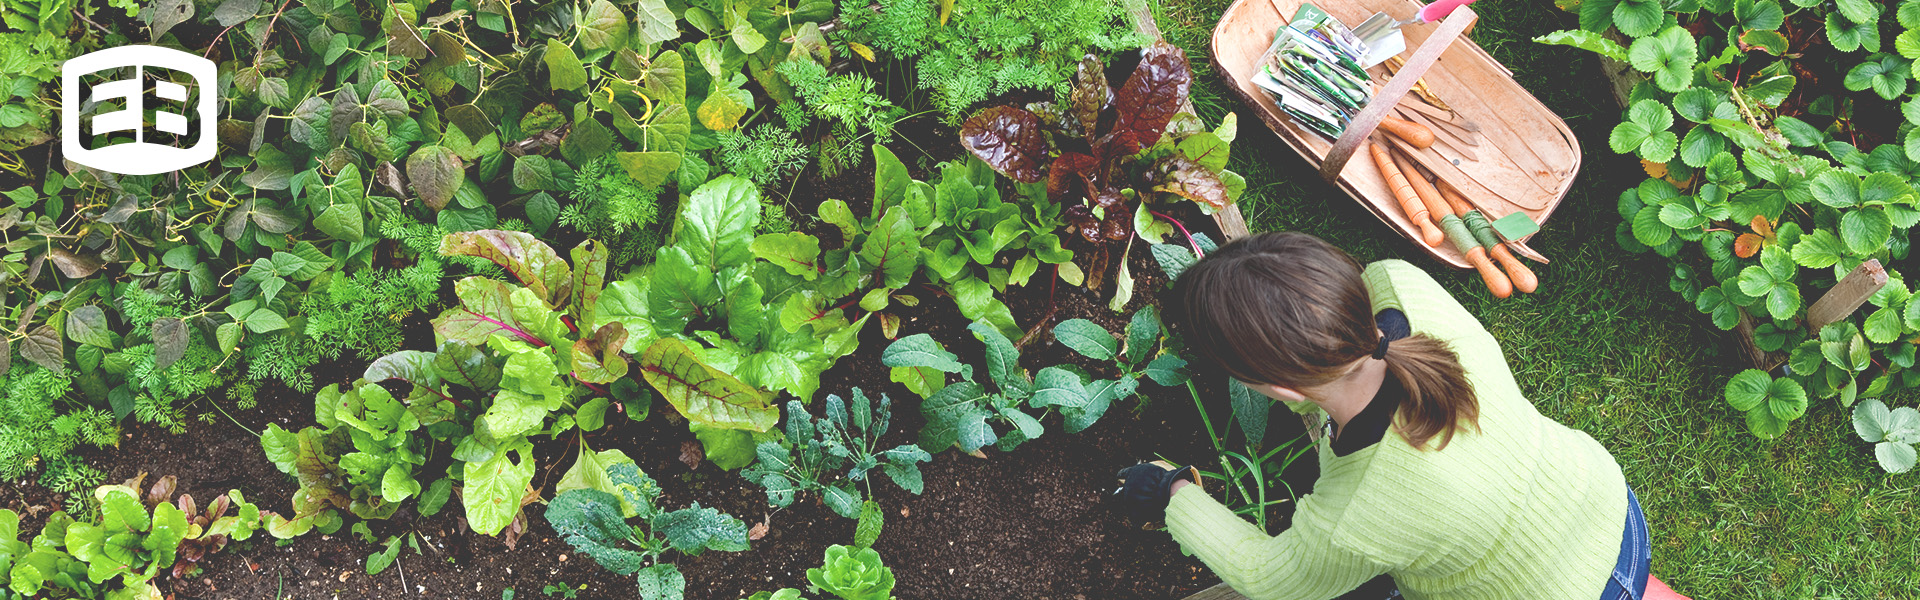 Vegetable Garden Supplies | Farm and Garden Supplies | Outdoor Landscape Supply | Bulk Landscape Supplies | Eaton Brothers